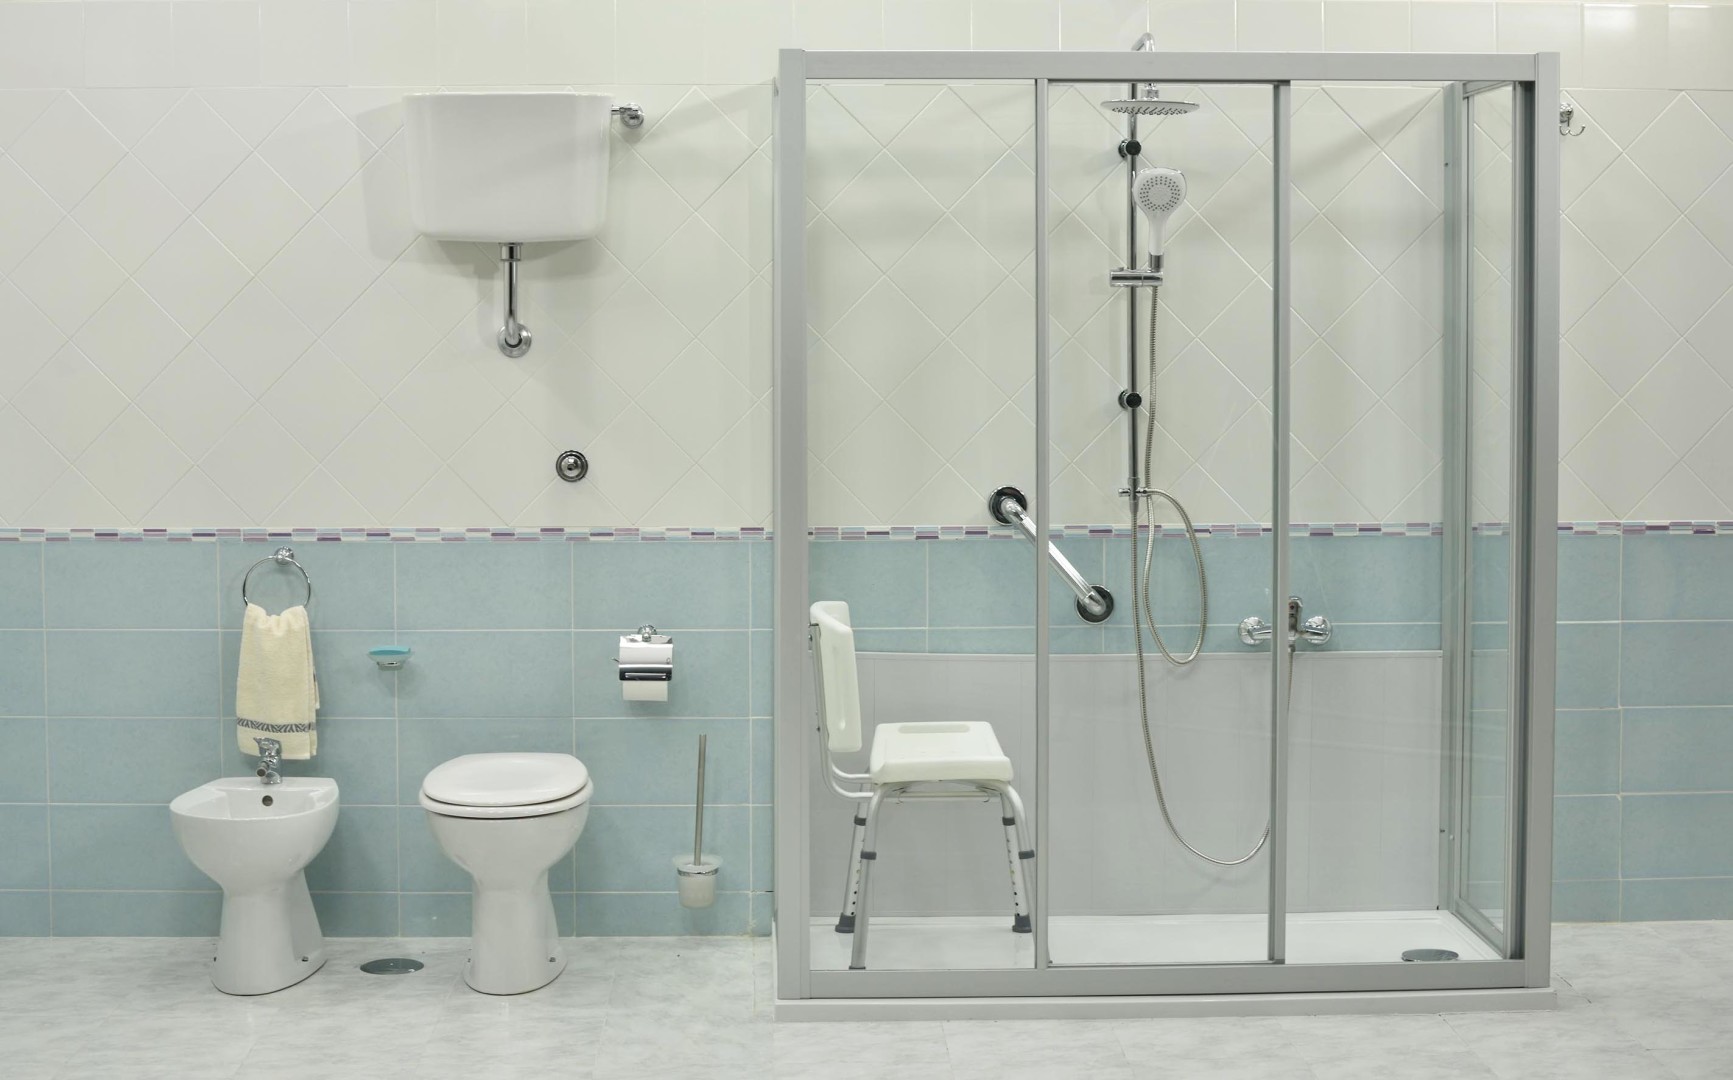 Vasca o doccia: cosa installare in bagno | Docciatime.it trasforma da bagno in doccia in sole 6 ore